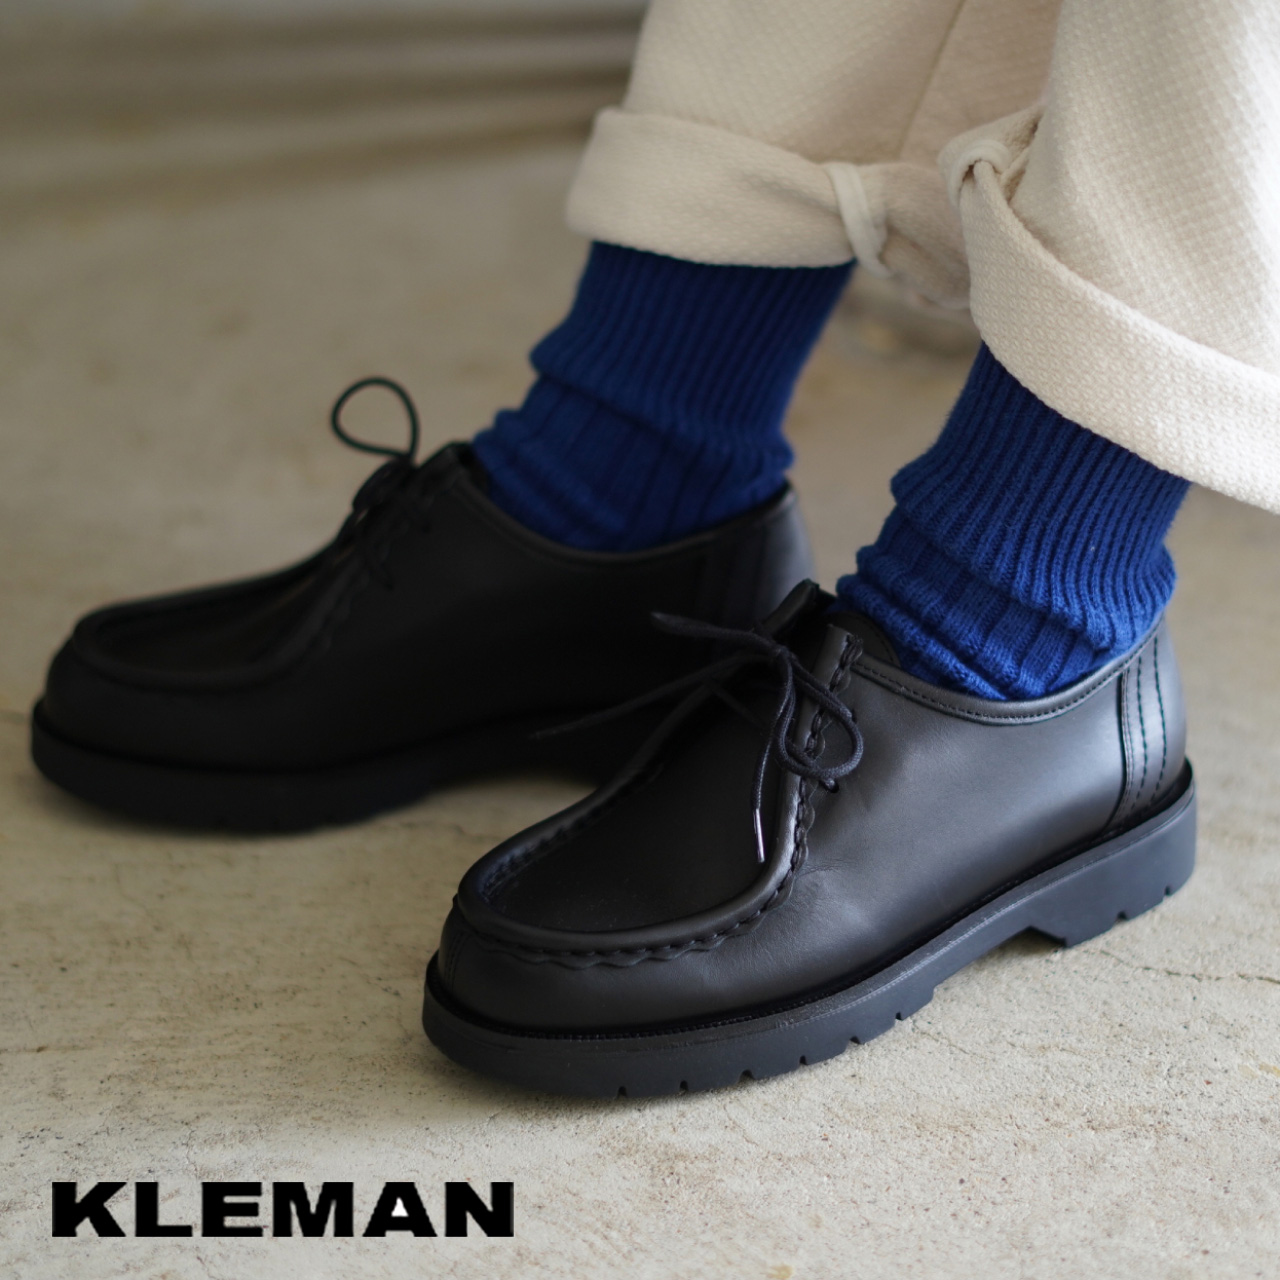 KLEMAN 独創的 クレマン :幅広いコーディネートに合わせやすいチロリアンシューズ 【63%OFF!】 レディース チロリアンシューズ 革靴 パドレ 22.5cm-24.5cm WOMEN 送料無料 PADRE レザーシューズ ウーマン 1018